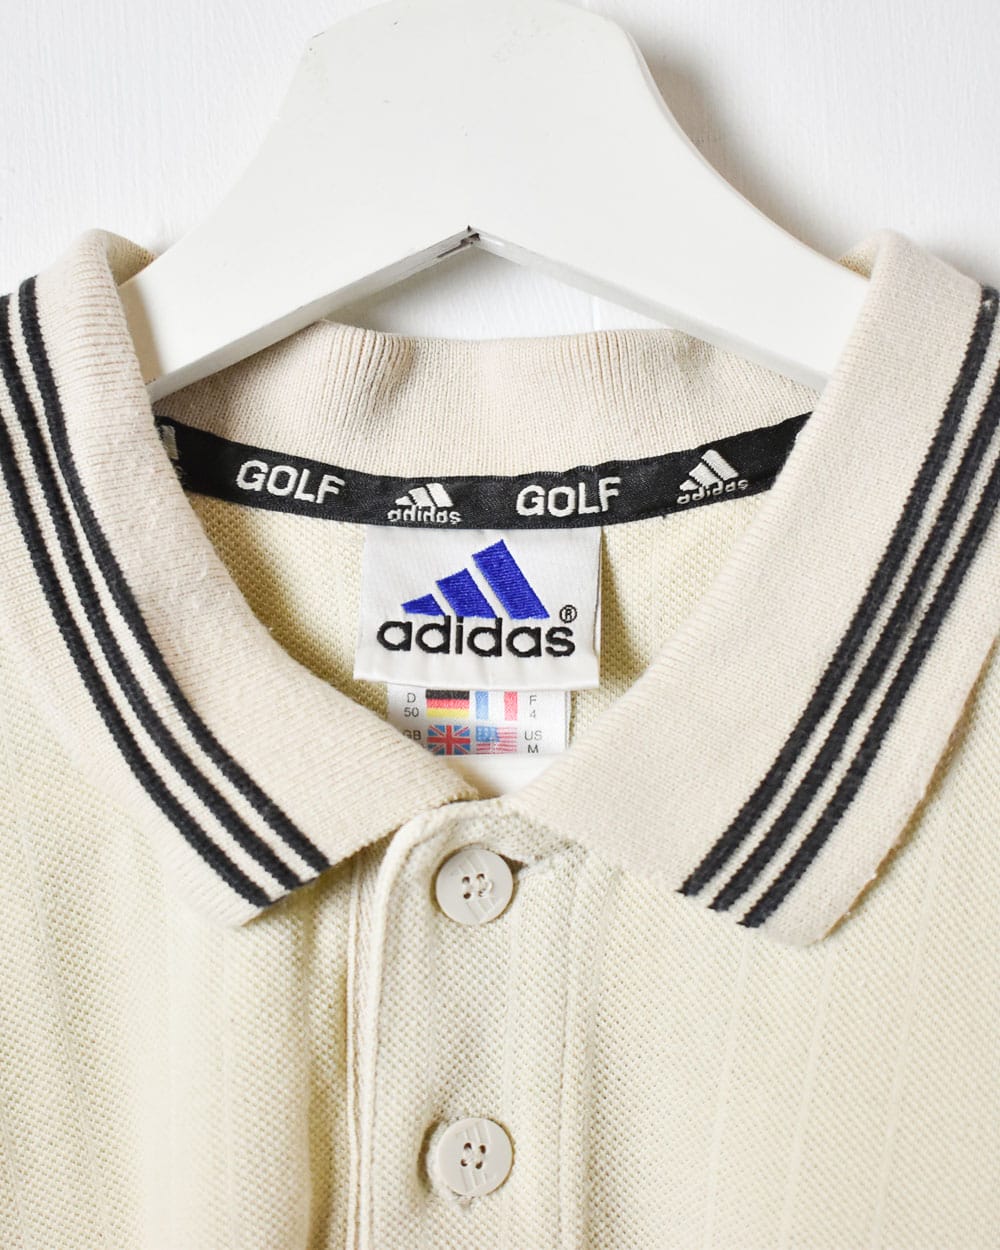 Neutral Adidas Golf Polo Shirt - Medium